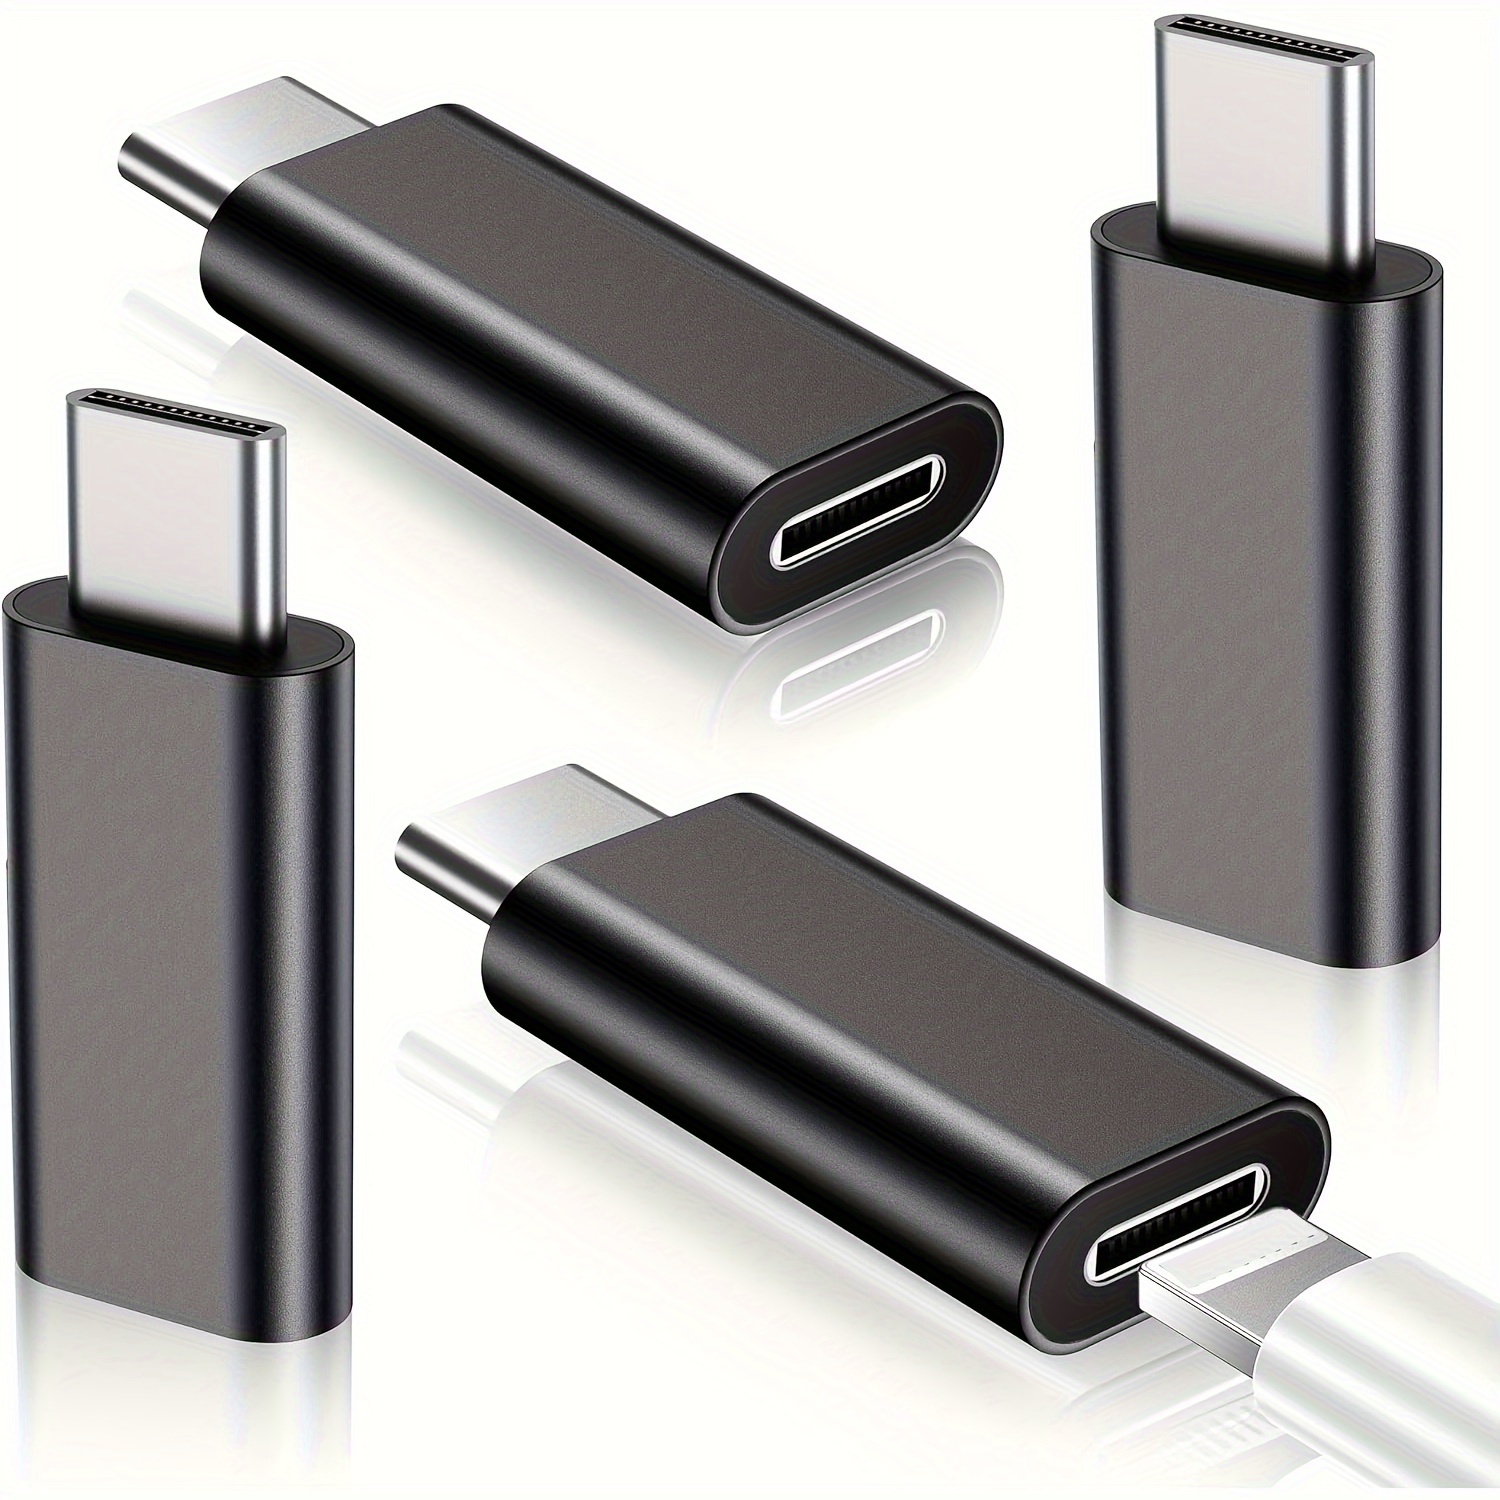 Adaptador OTG para iPhone USB C hembra a Lightning macho (paquete de 2)  cargador de Apple, sincronización de datos, dongle tipo c, lector de  tarjetas